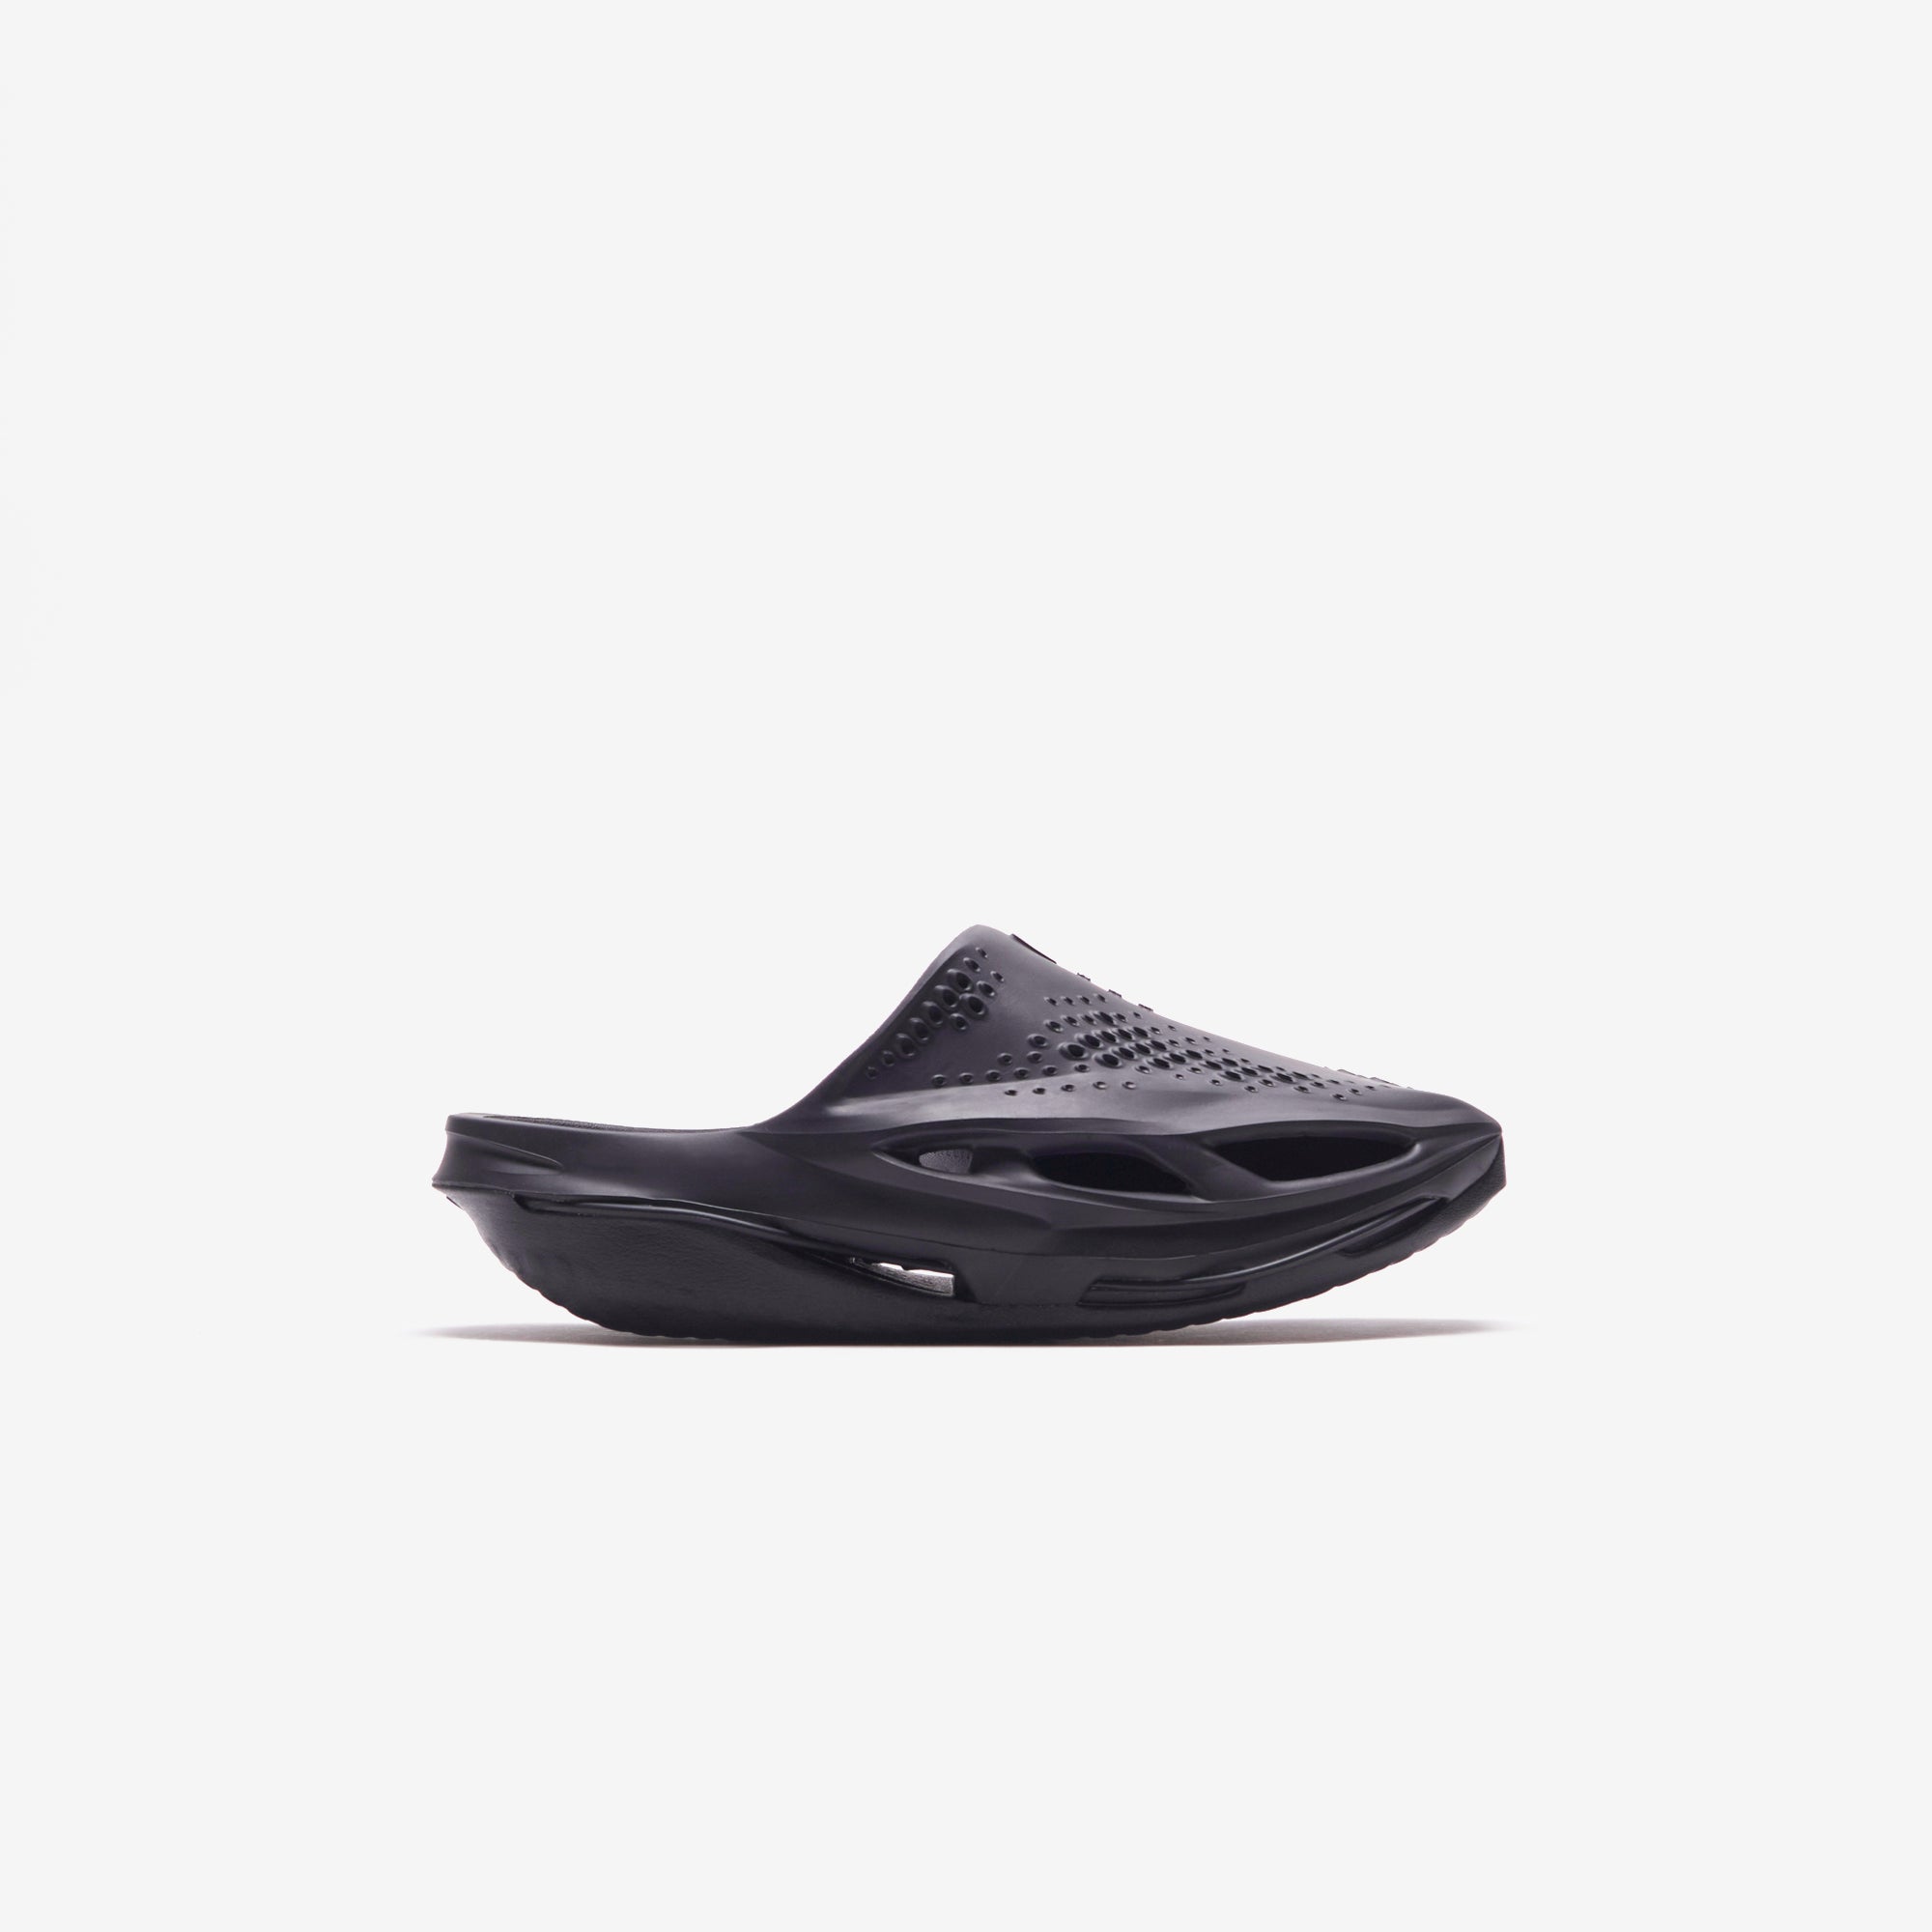 Nike x MMW 5 Slide - Black – Kith